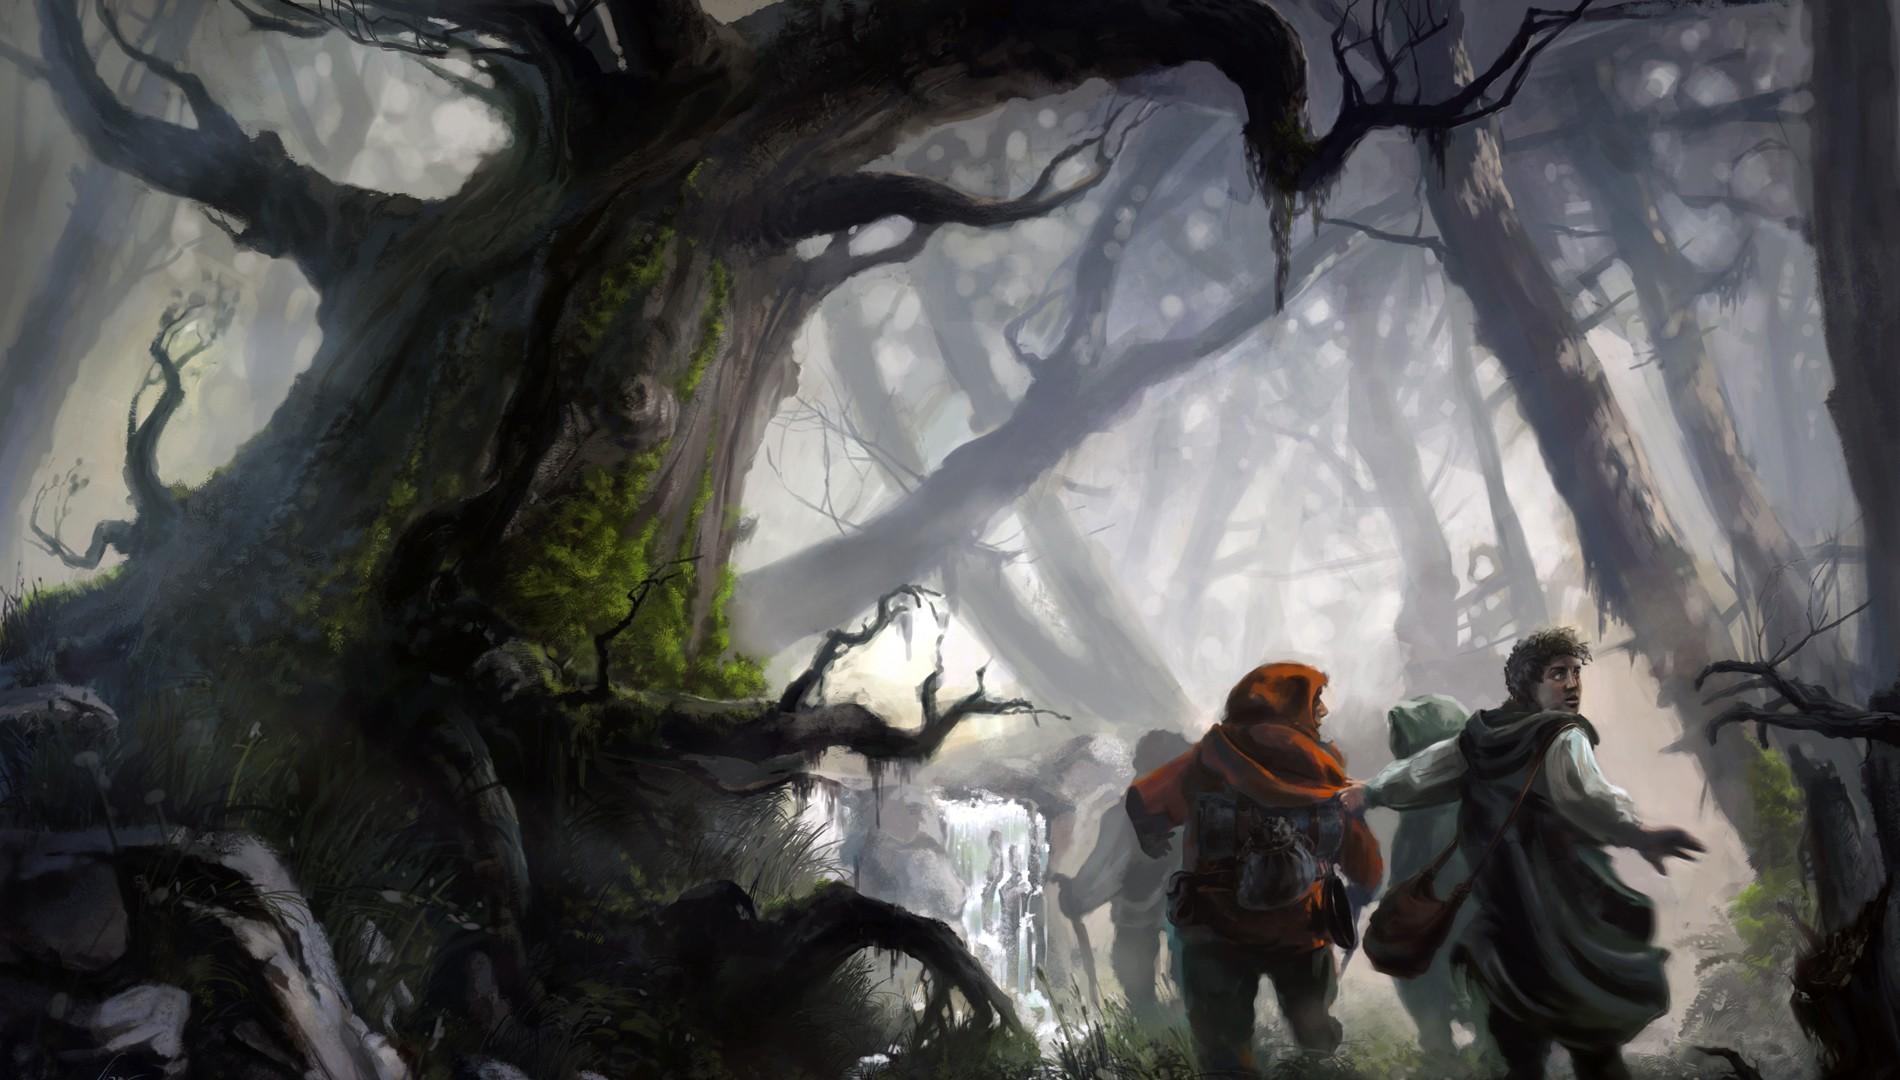 1900x1080 fond d'écran,jeu d'aventure d'action,oeuvre de cg,forêt,arbre,illustration